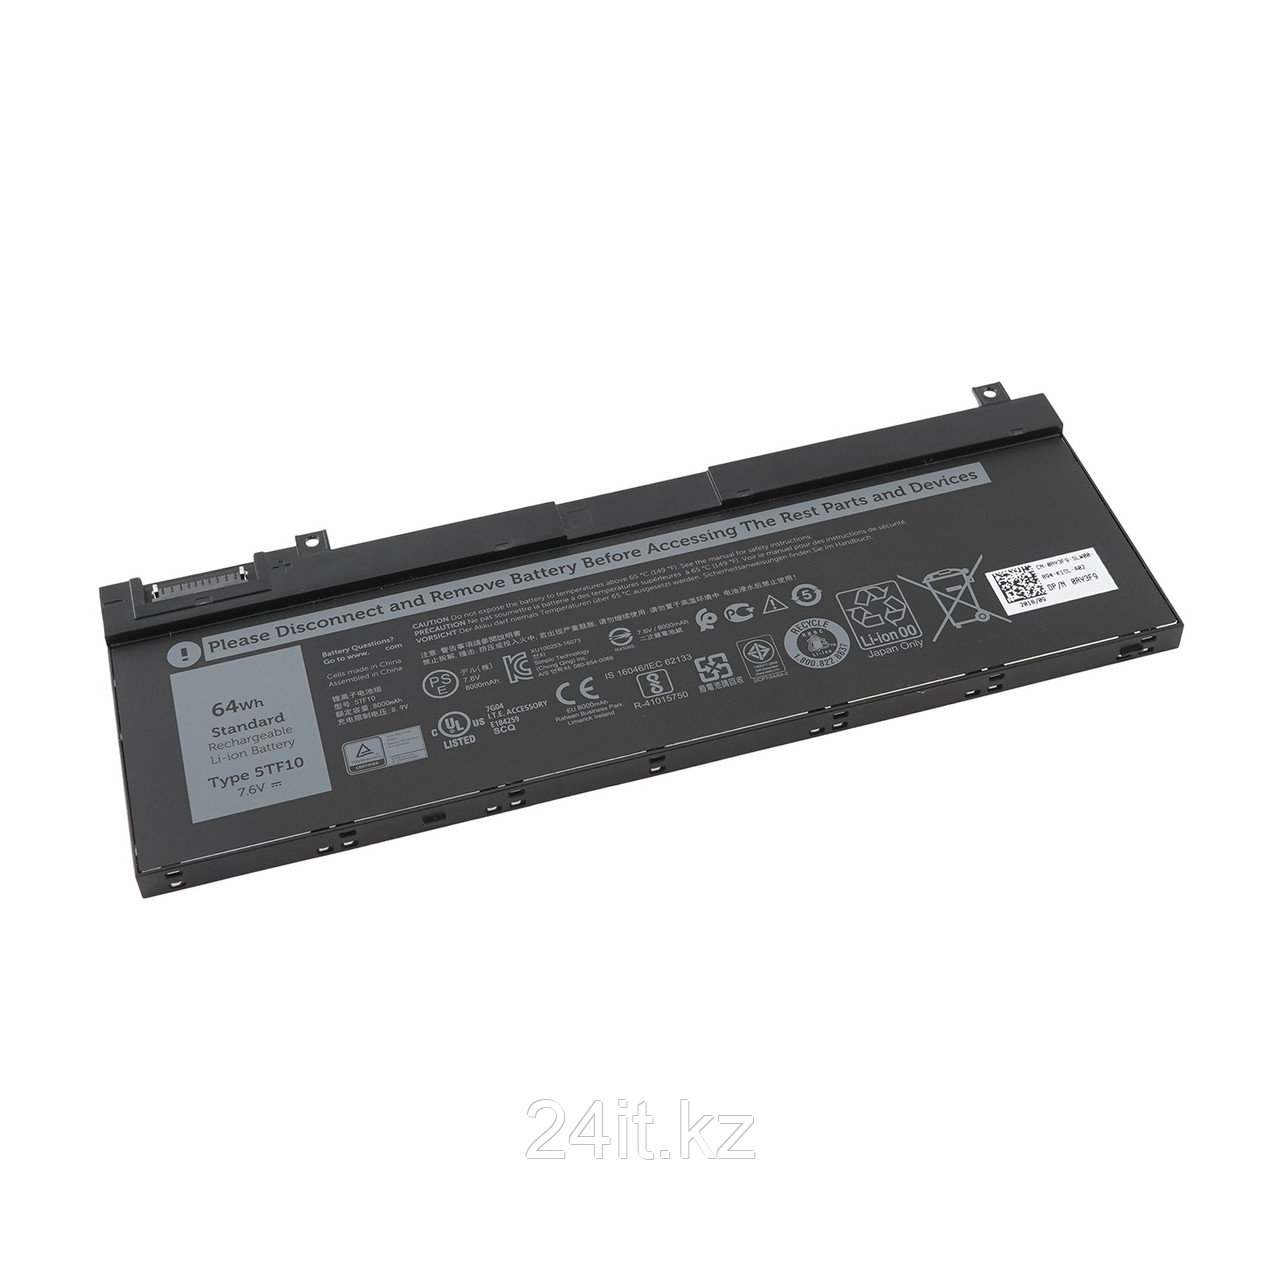 Аккумулятор 5TF10 для ноутбука Dell Precision /7,6В/ 8000mAh черный - ОРИГИНАЛ